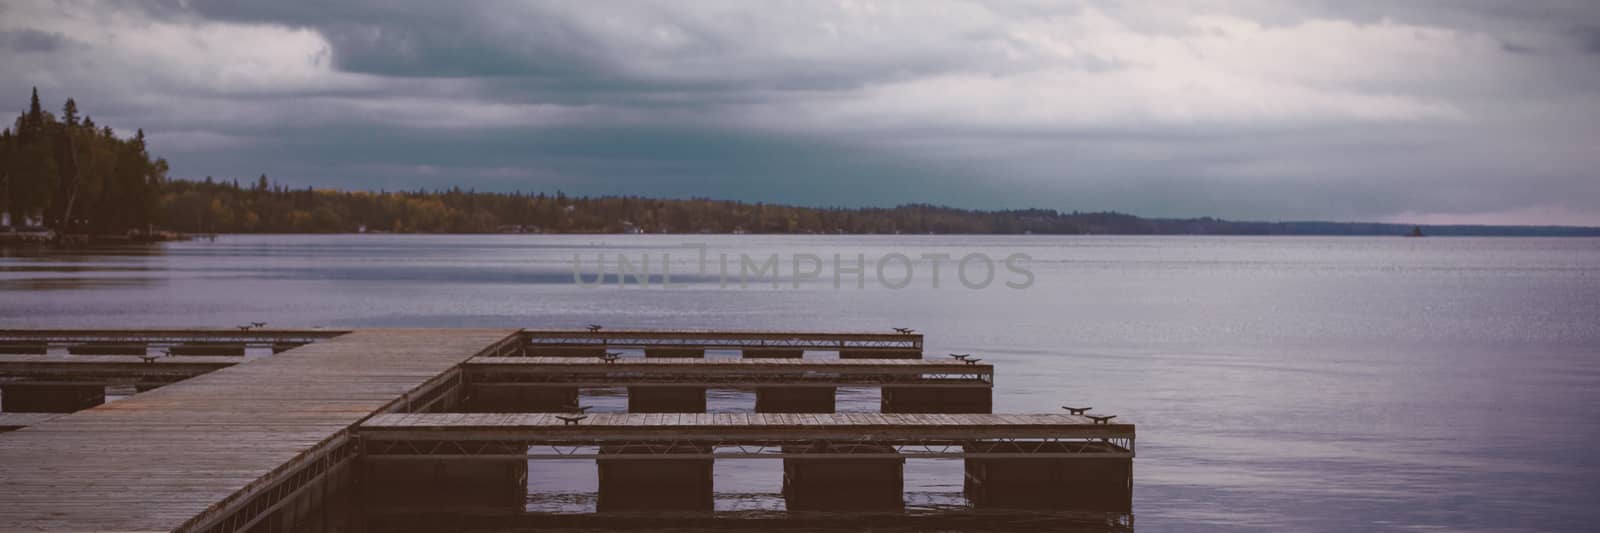 River pier at dawn by Wavebreakmedia